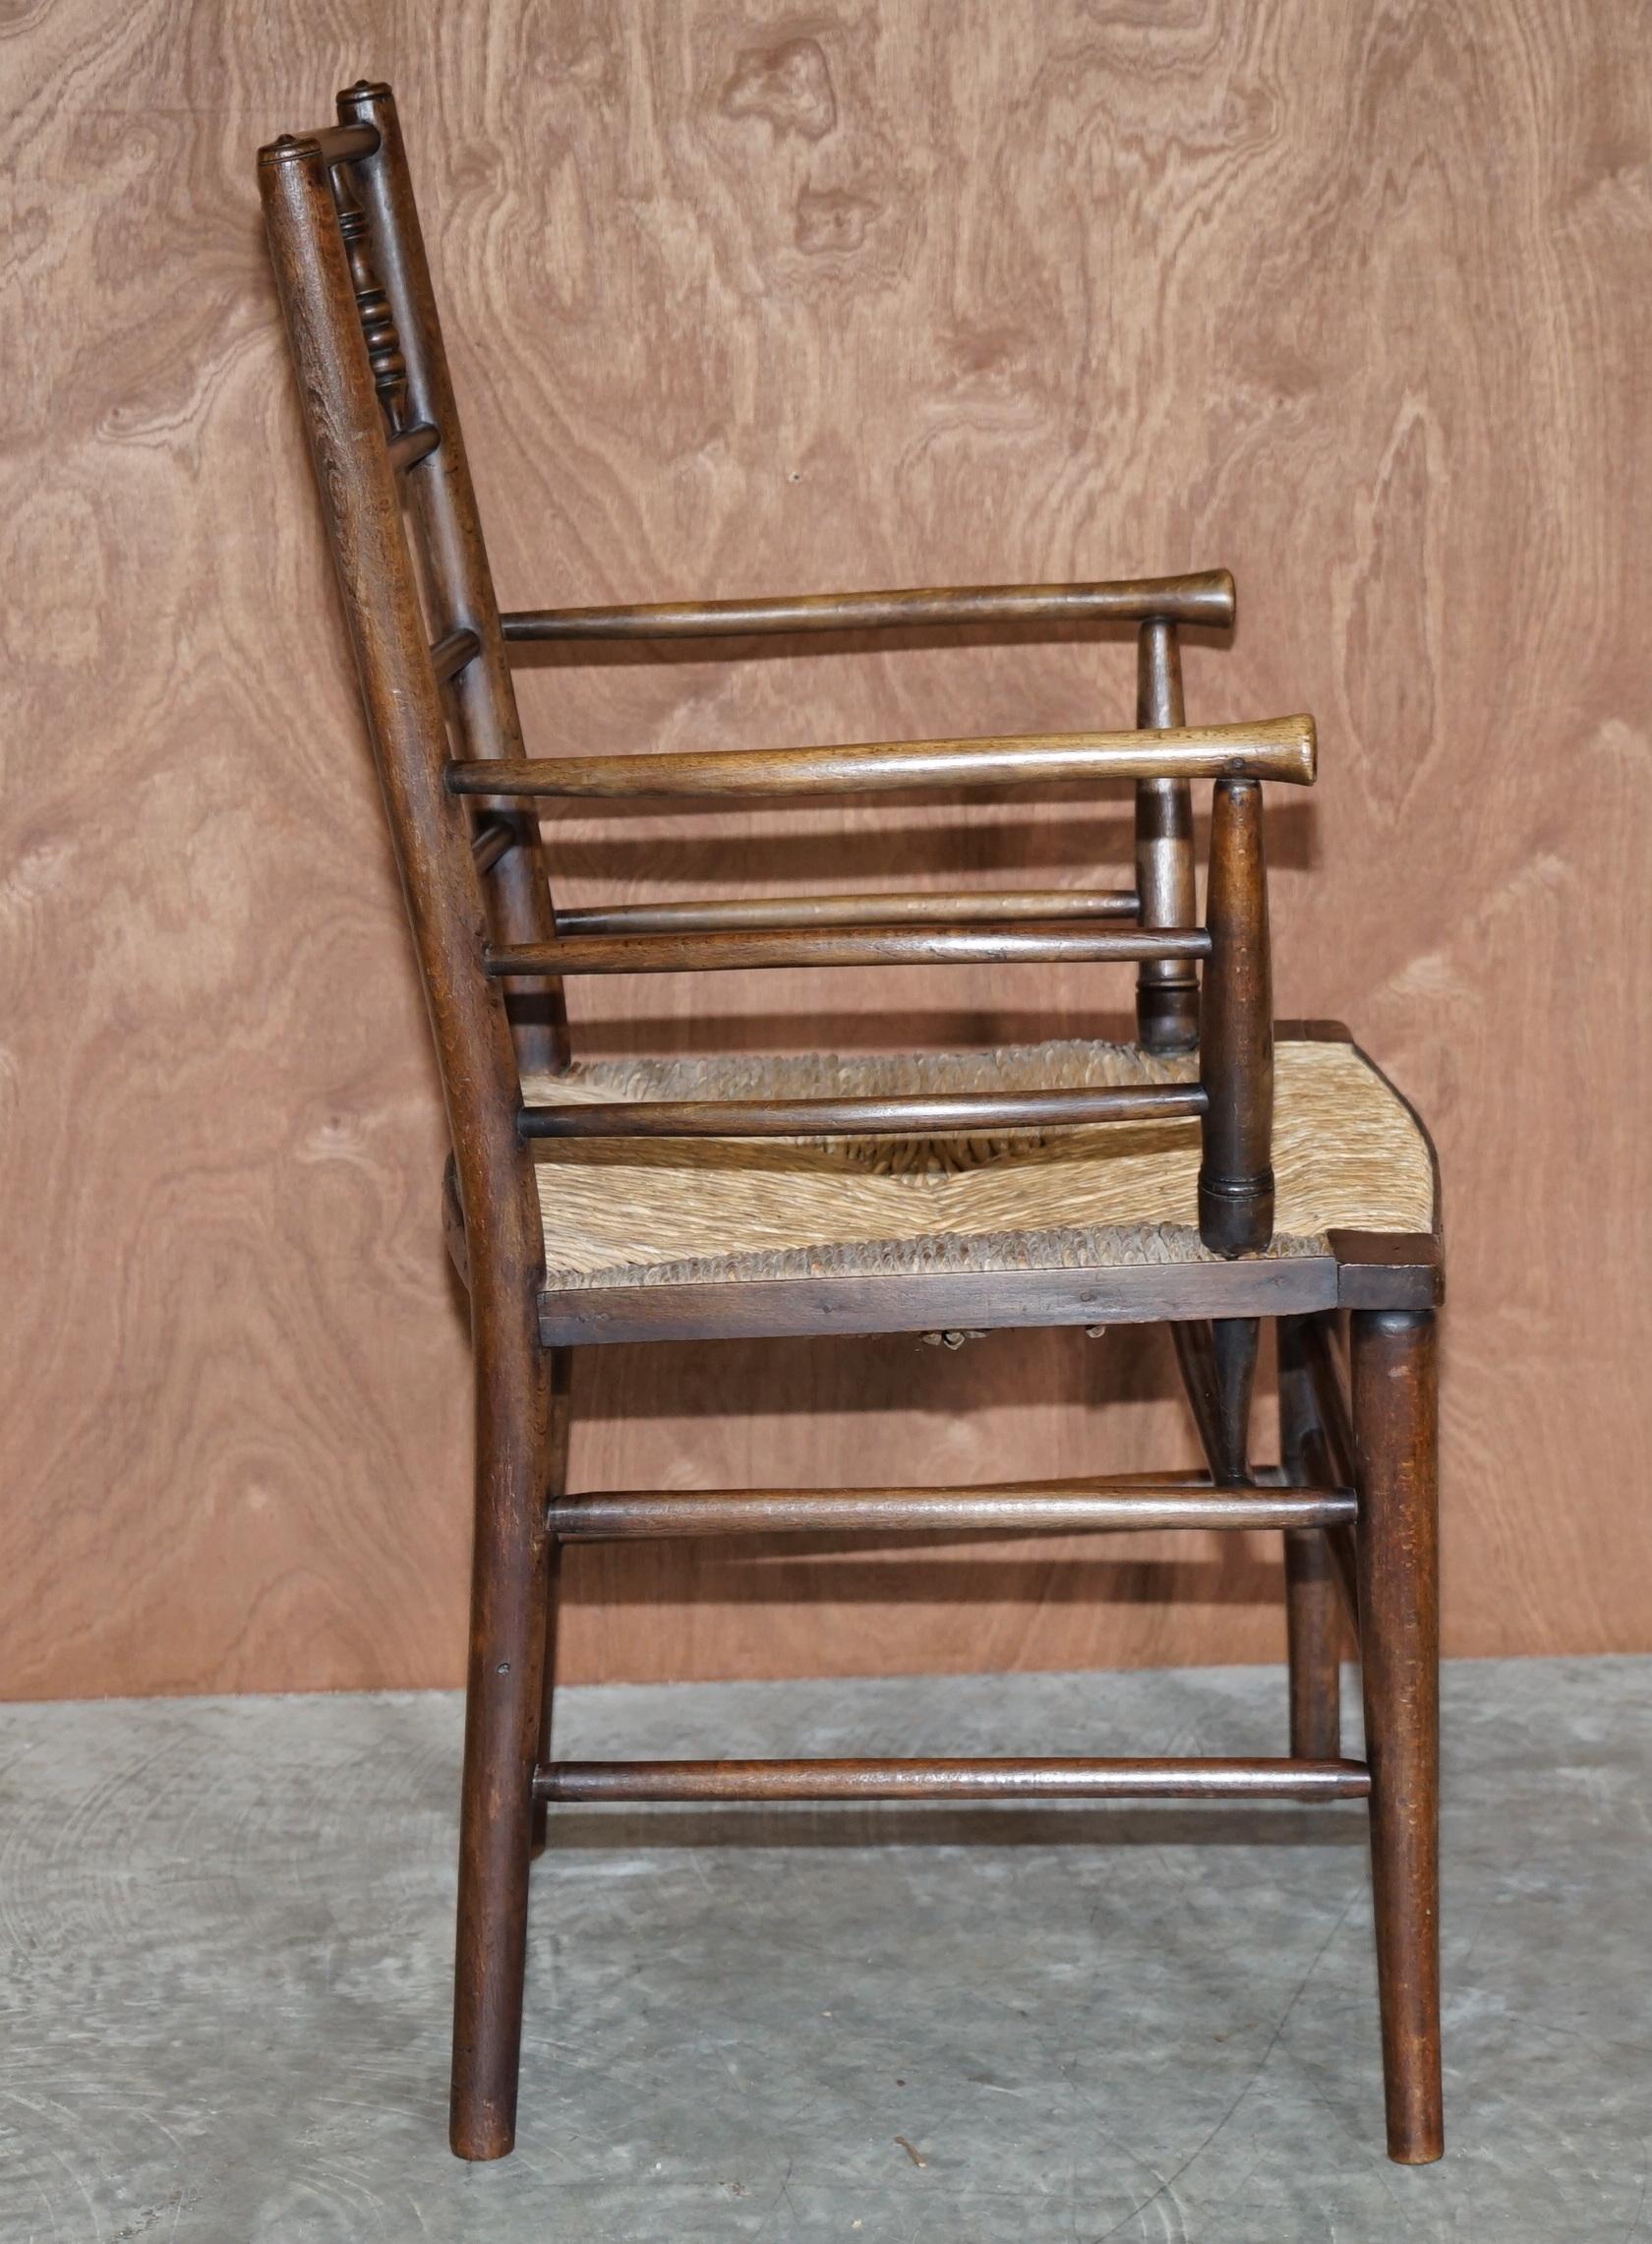 Antique Original William Morris Sussex Rush Seat Armchair Seen in the V&A Museum 3